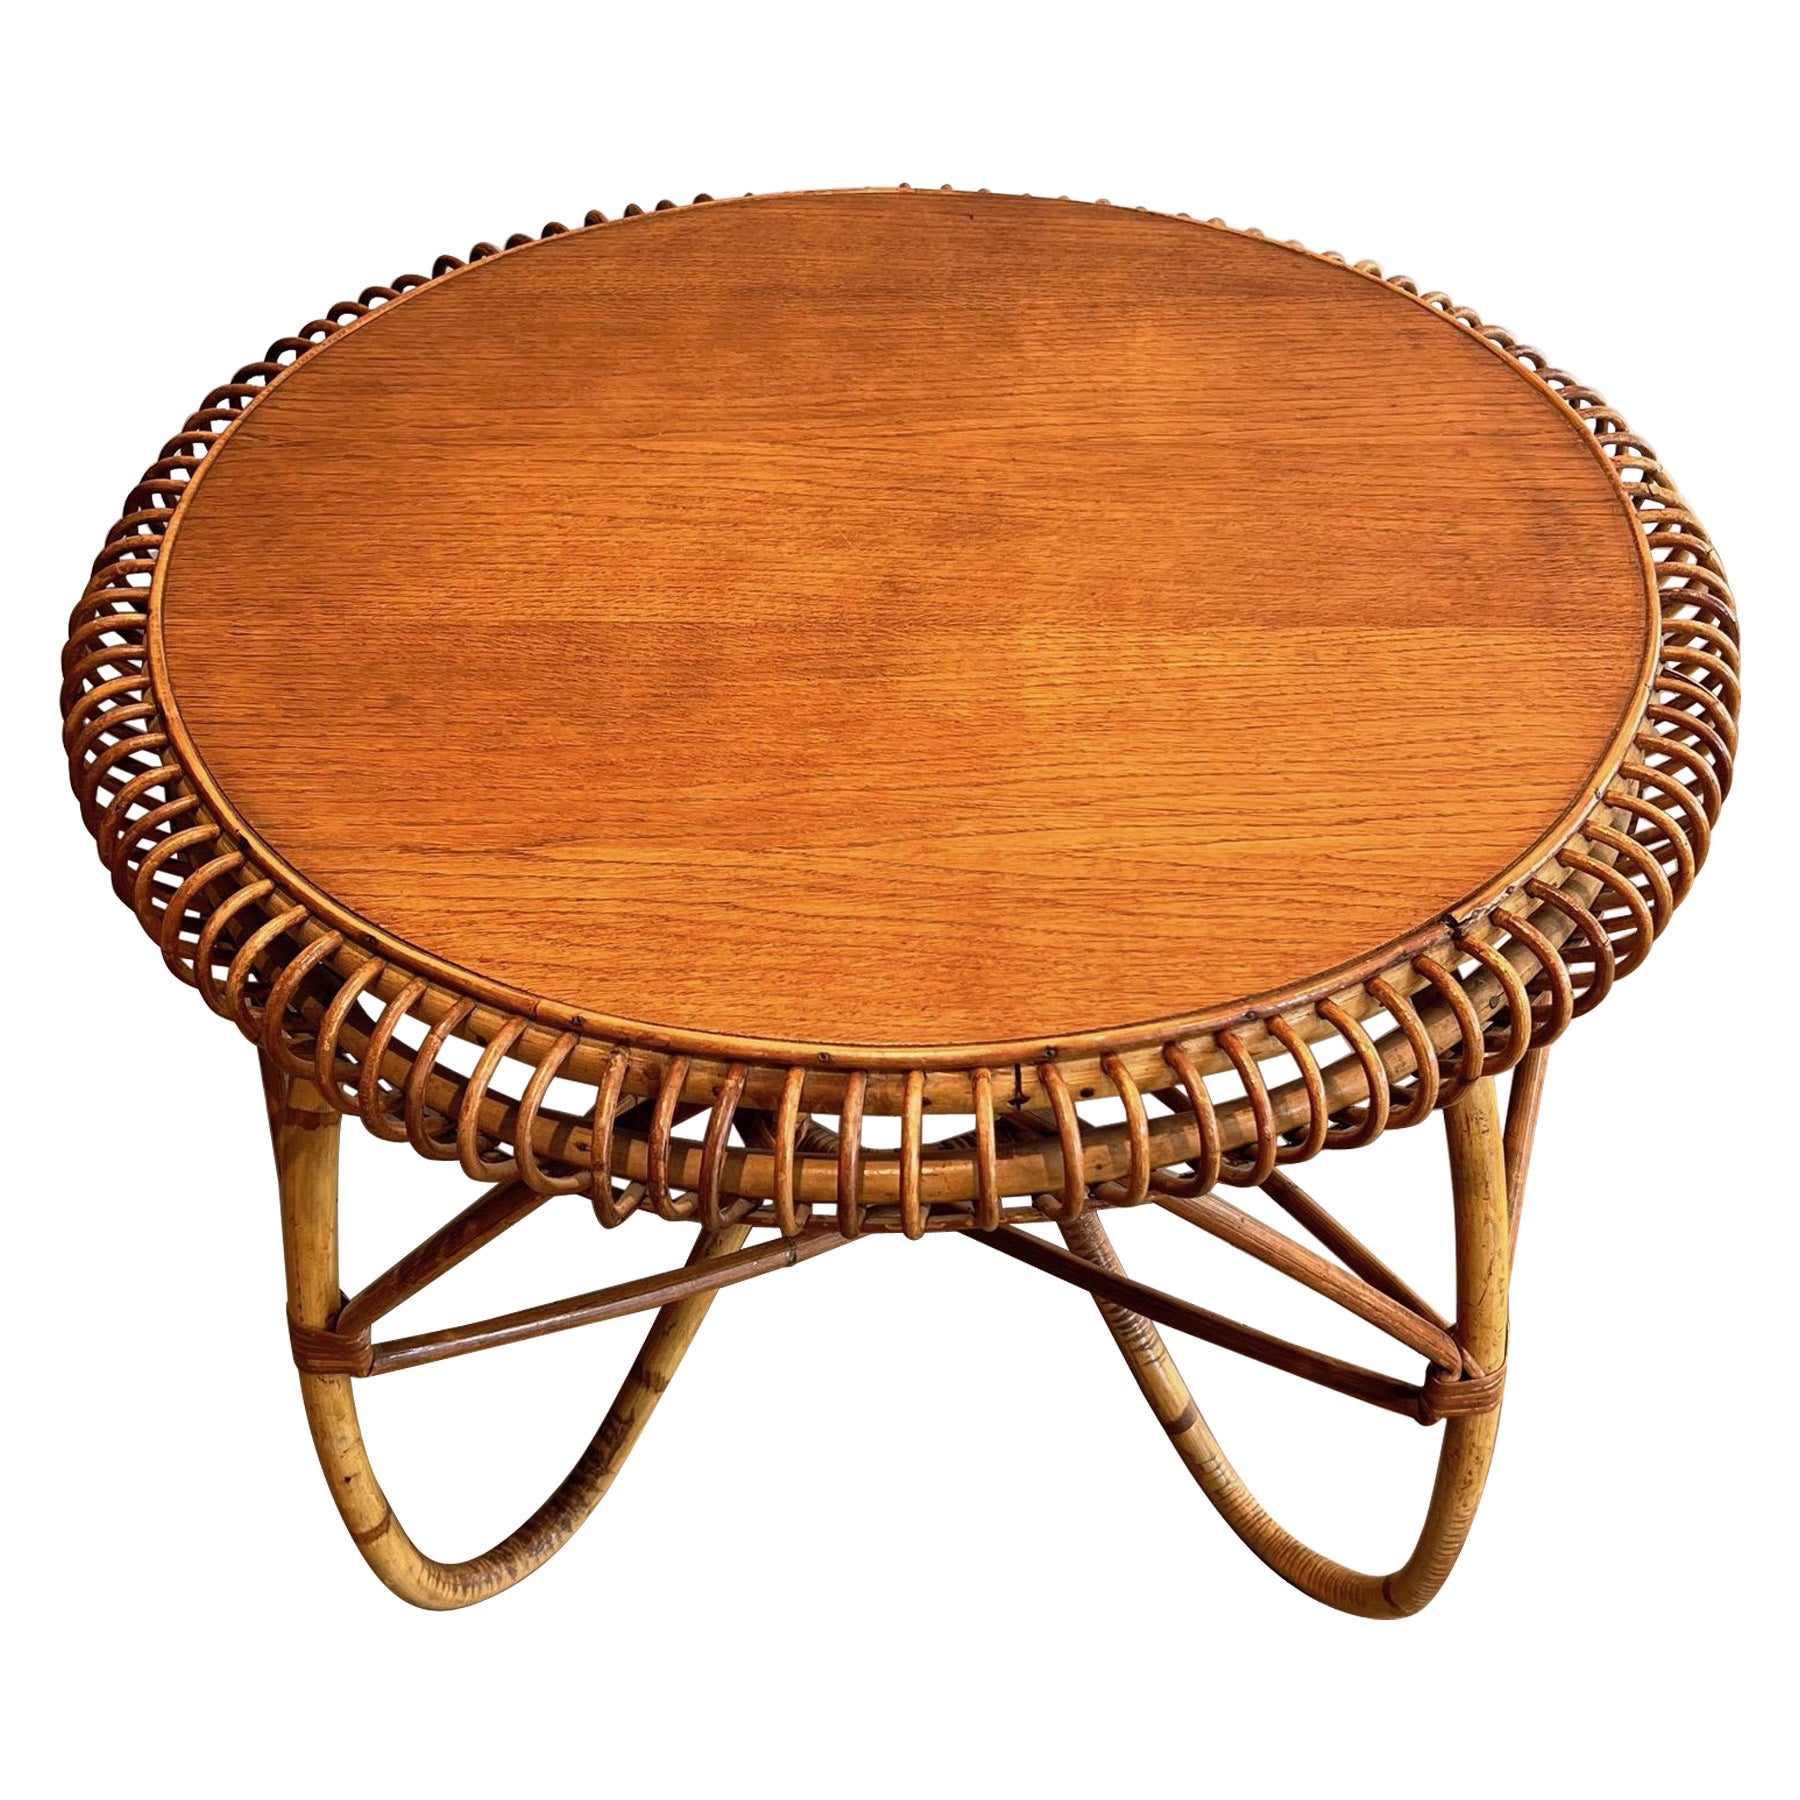 Table basse ronde en rotin et Wood Wood. Œuvre italienne dans le style de Franco Albini